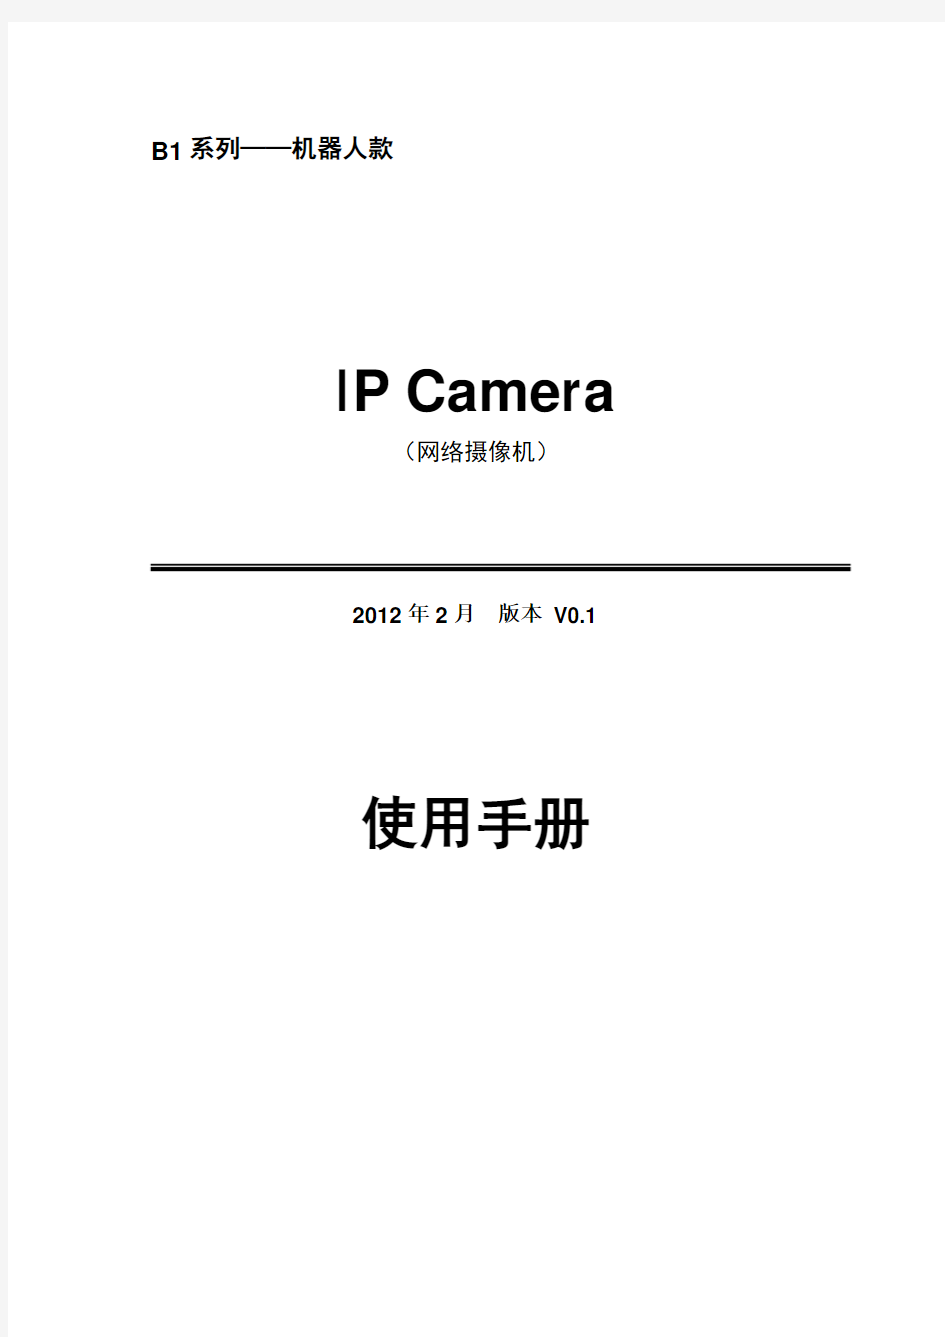 B1系列IPCAMERA使用手册(机器人)